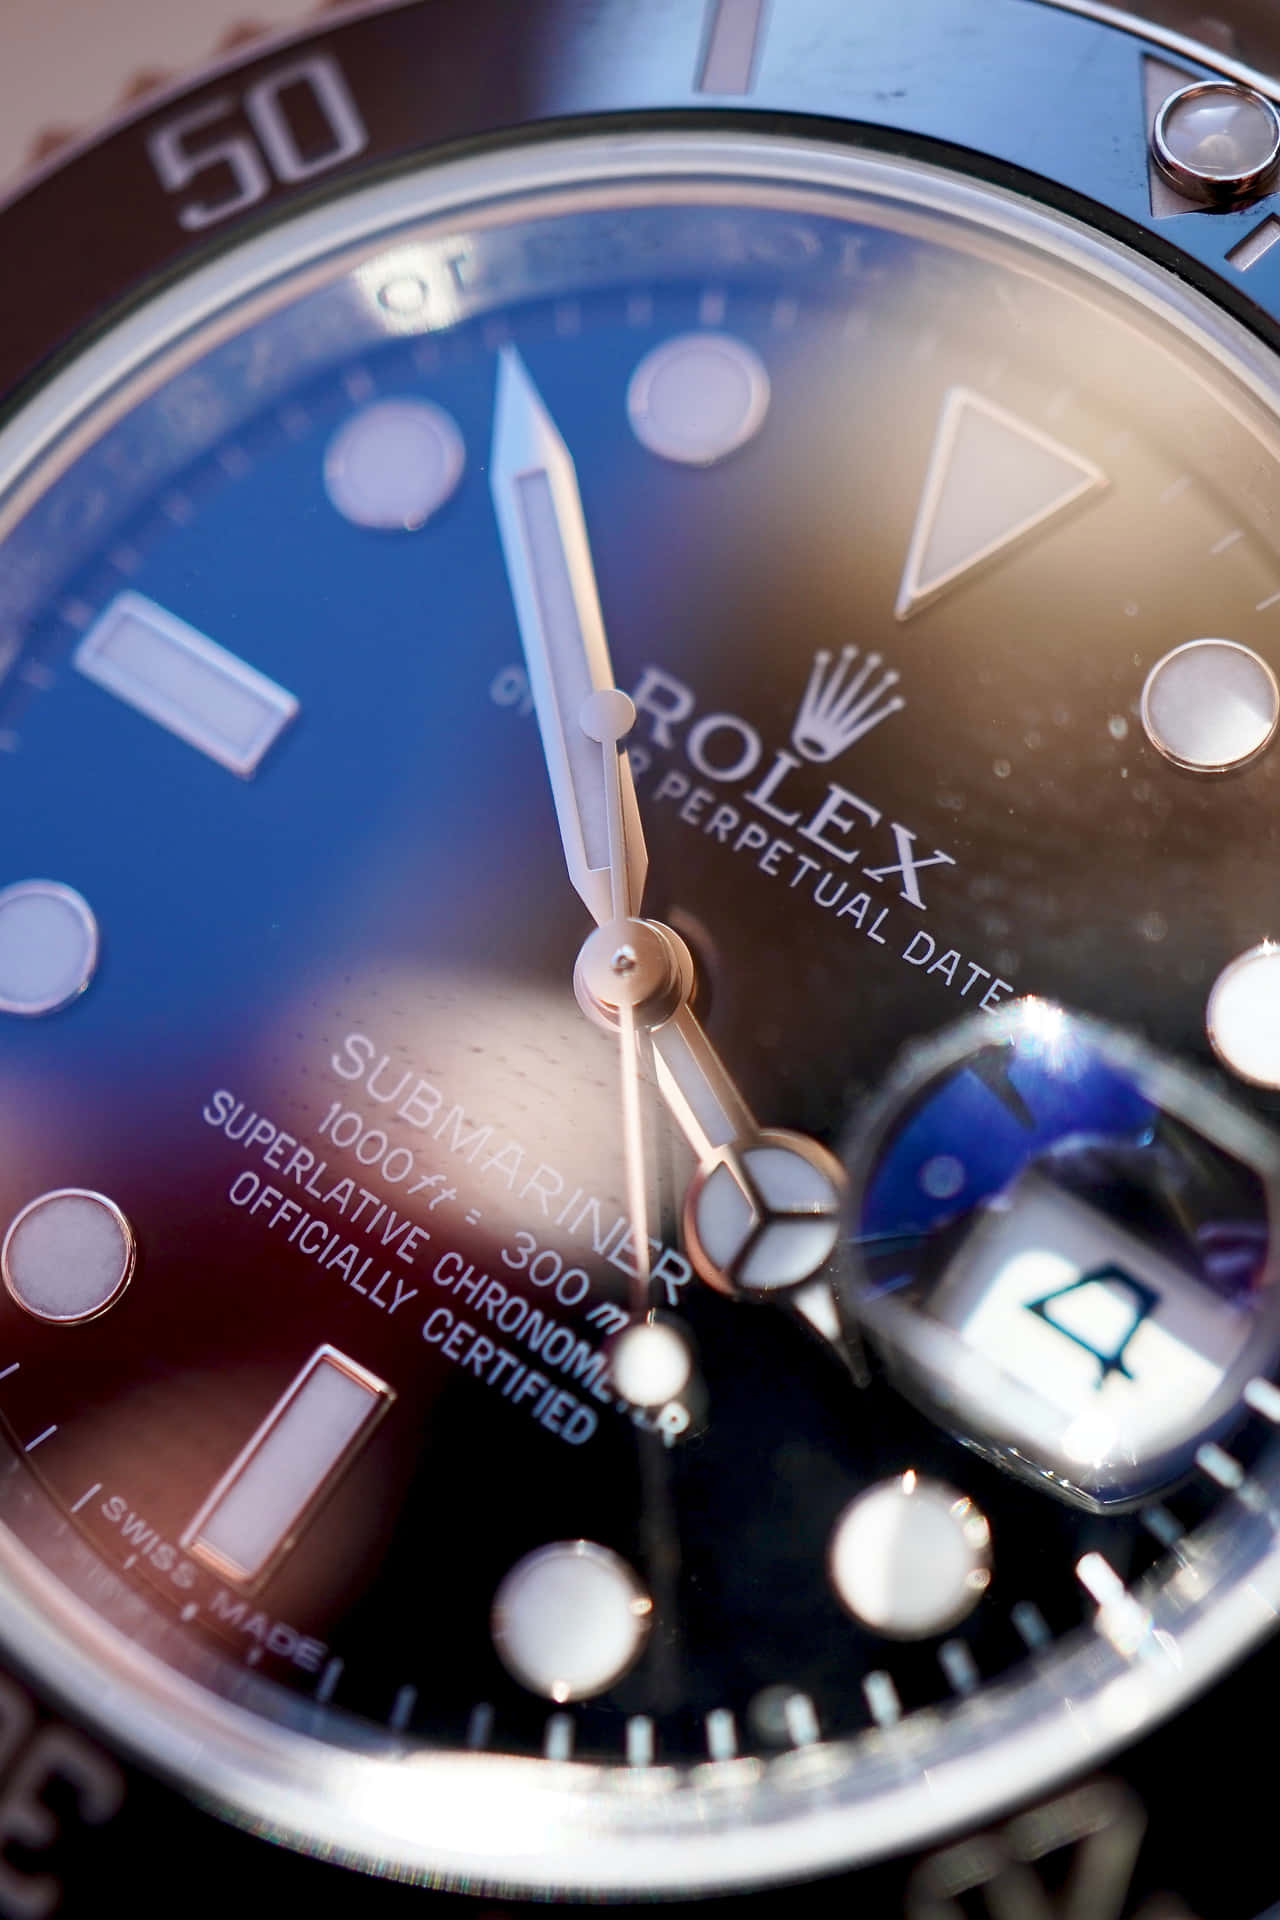 Rolex Luxury Timepiece on a Wrist